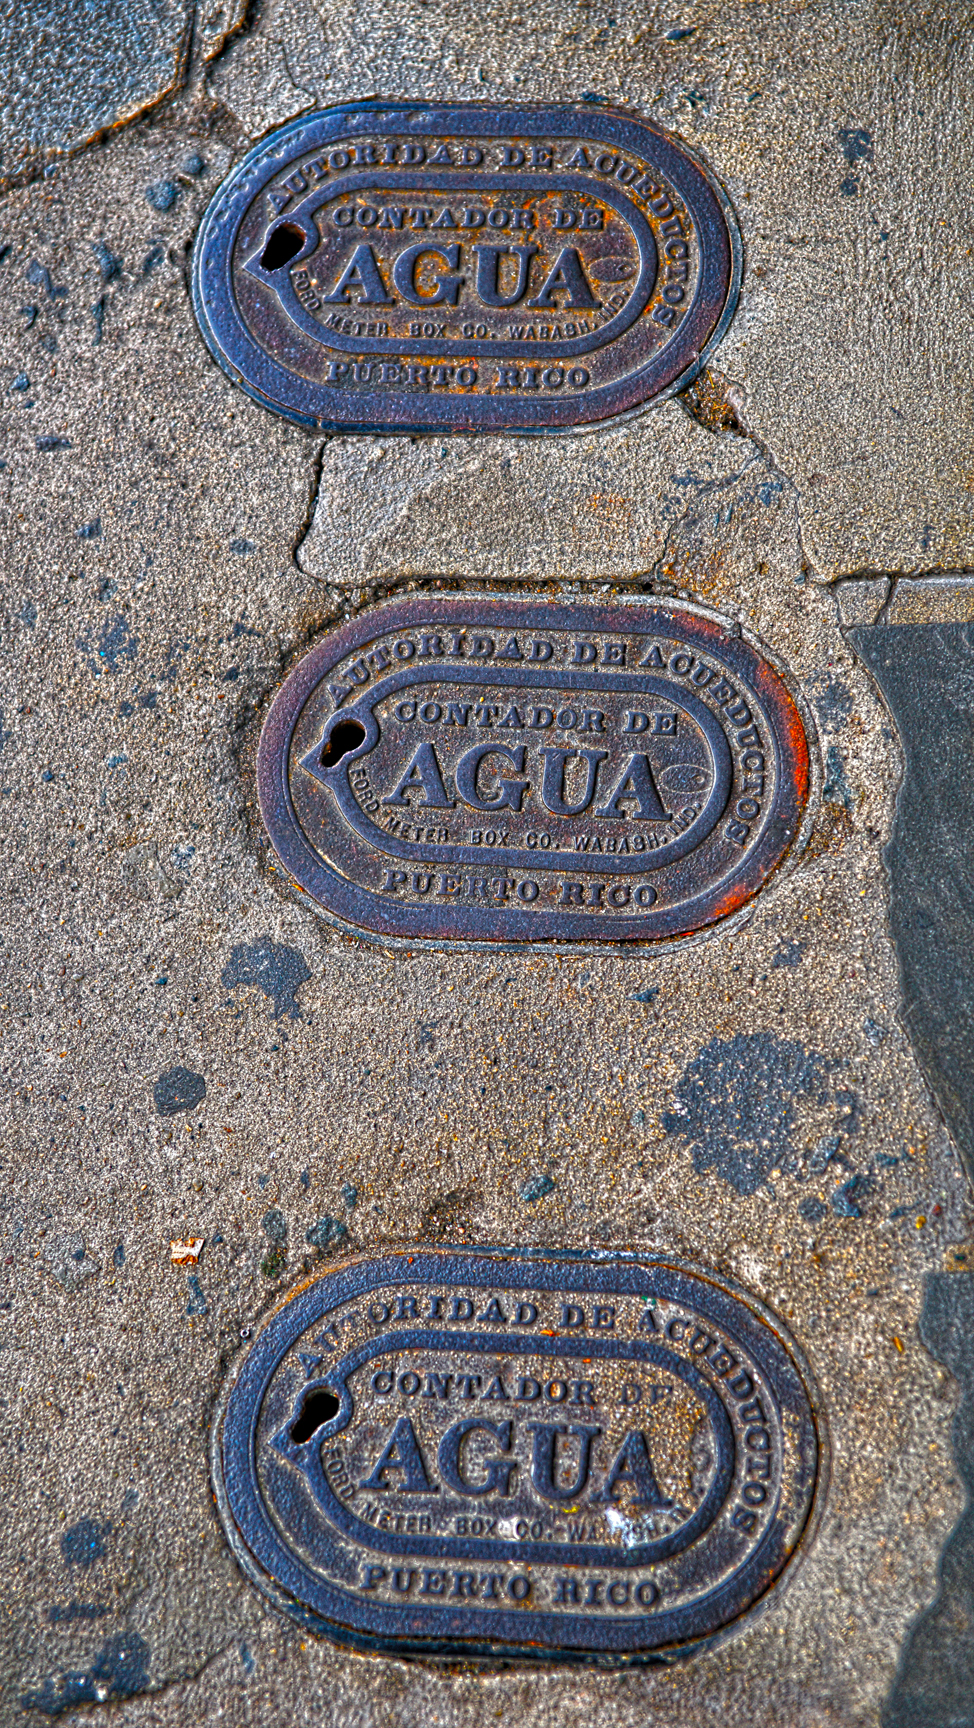 Agua/Water meter covers on the sidewalk.